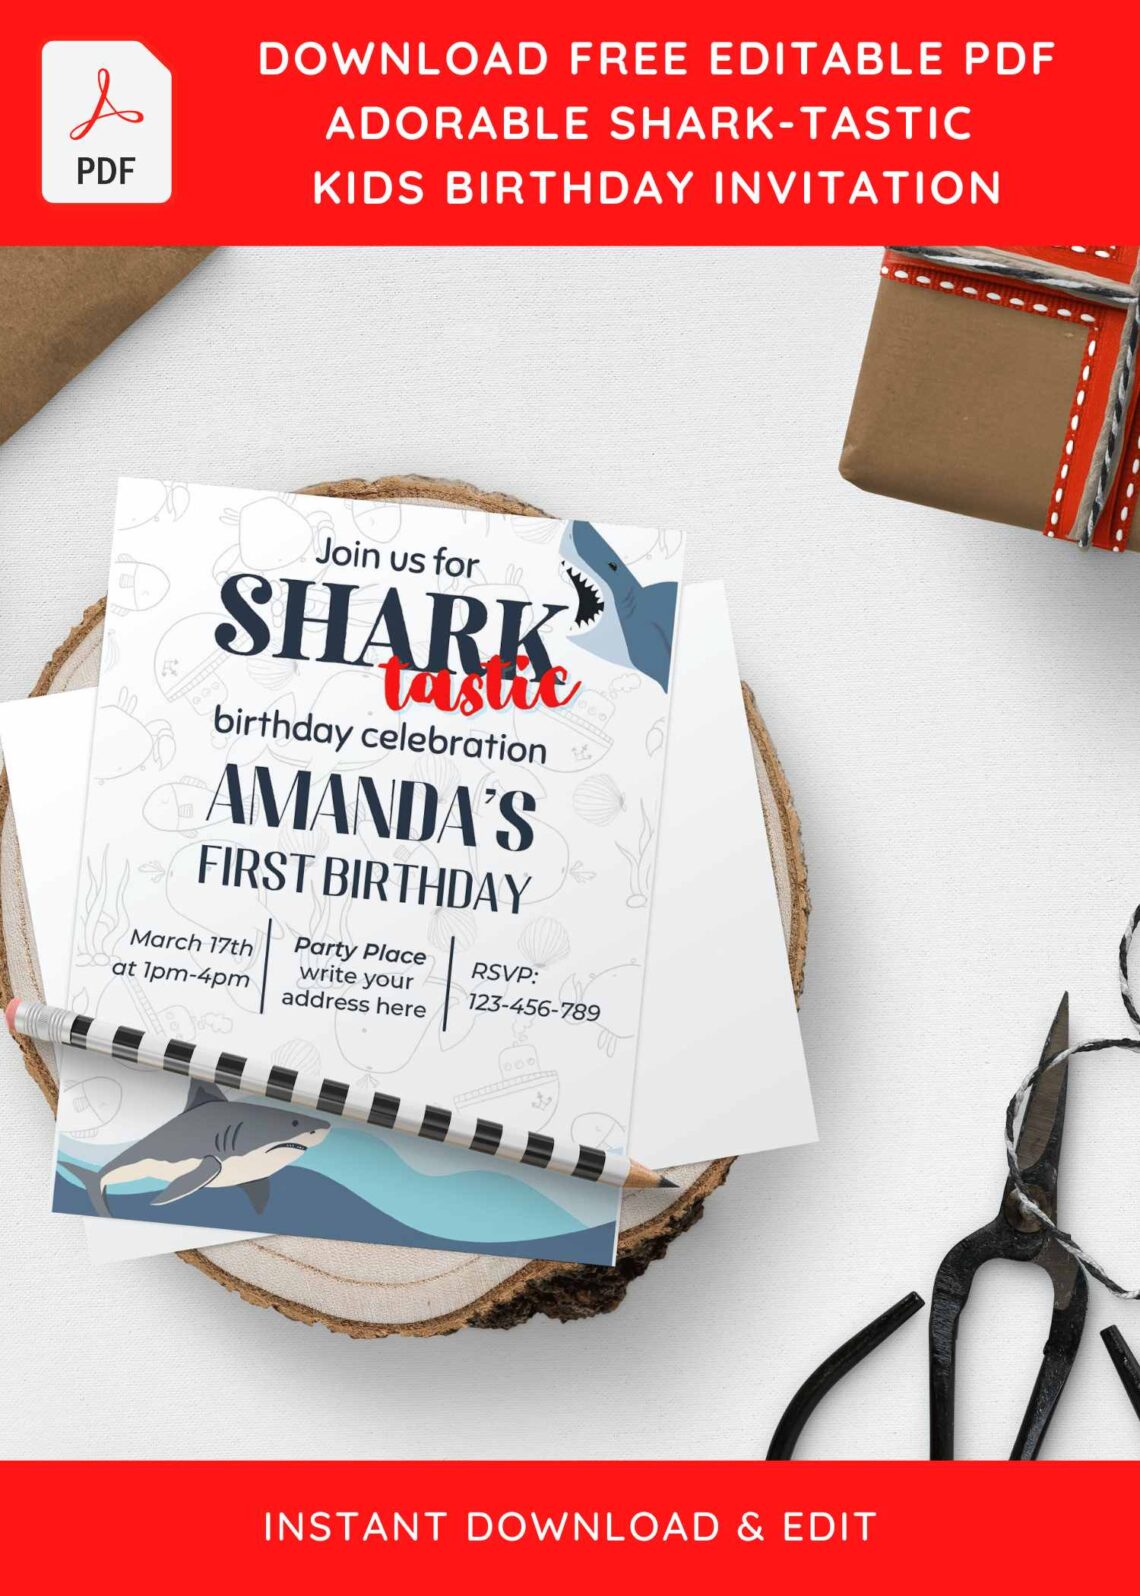 (Free Editable PDF) SHARK-TASTIC Birthday Invitation Templates